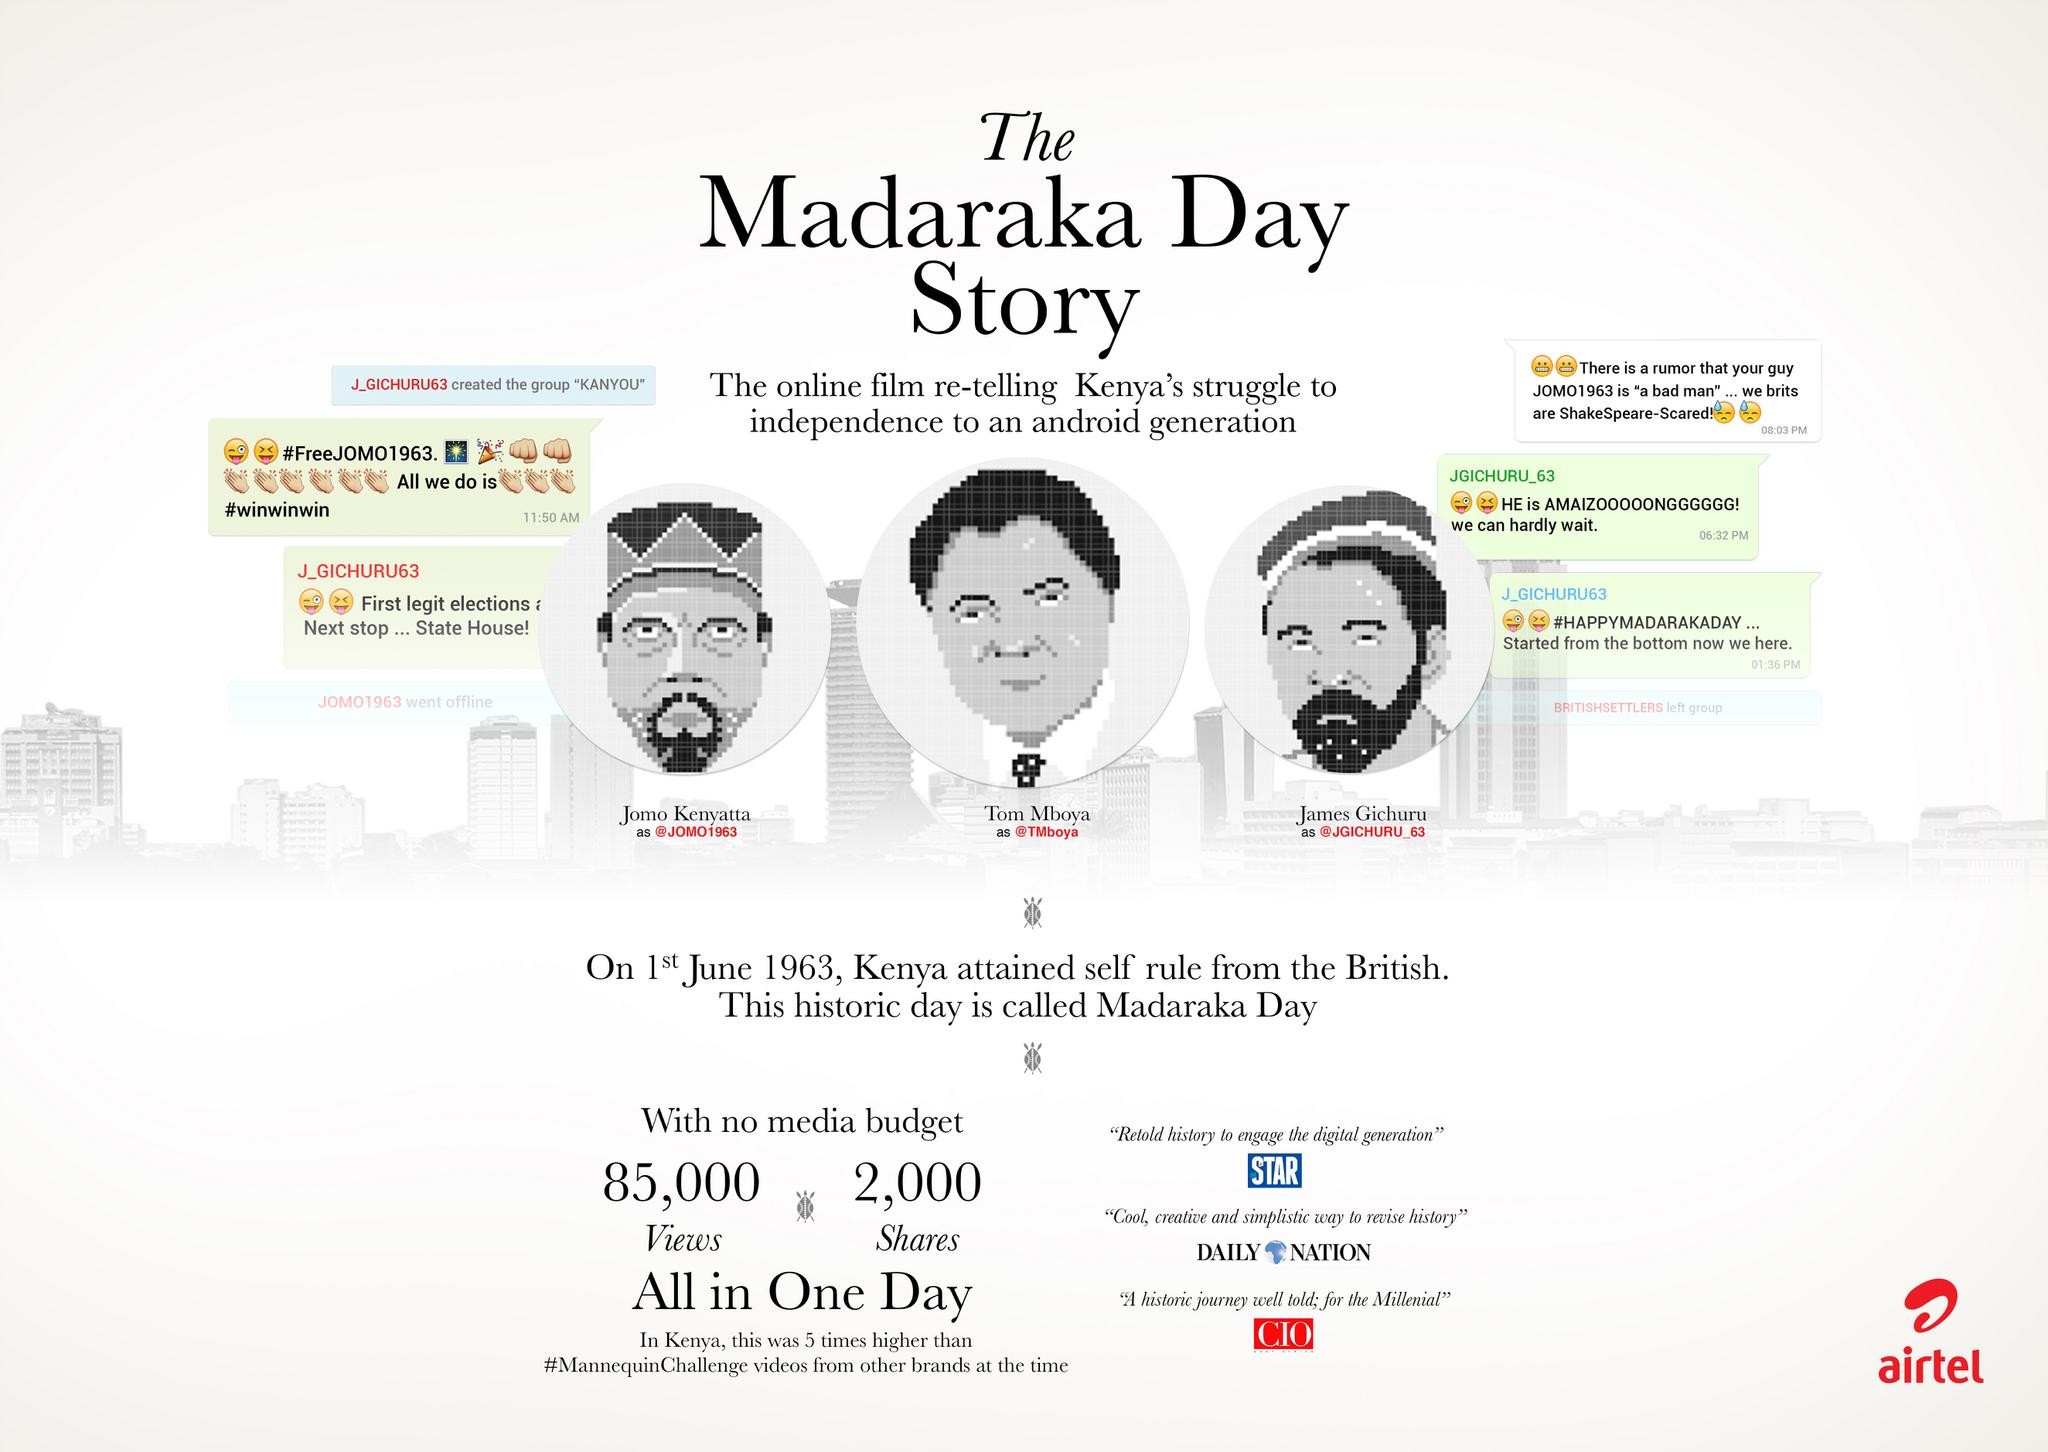 The Madaraka Day Story